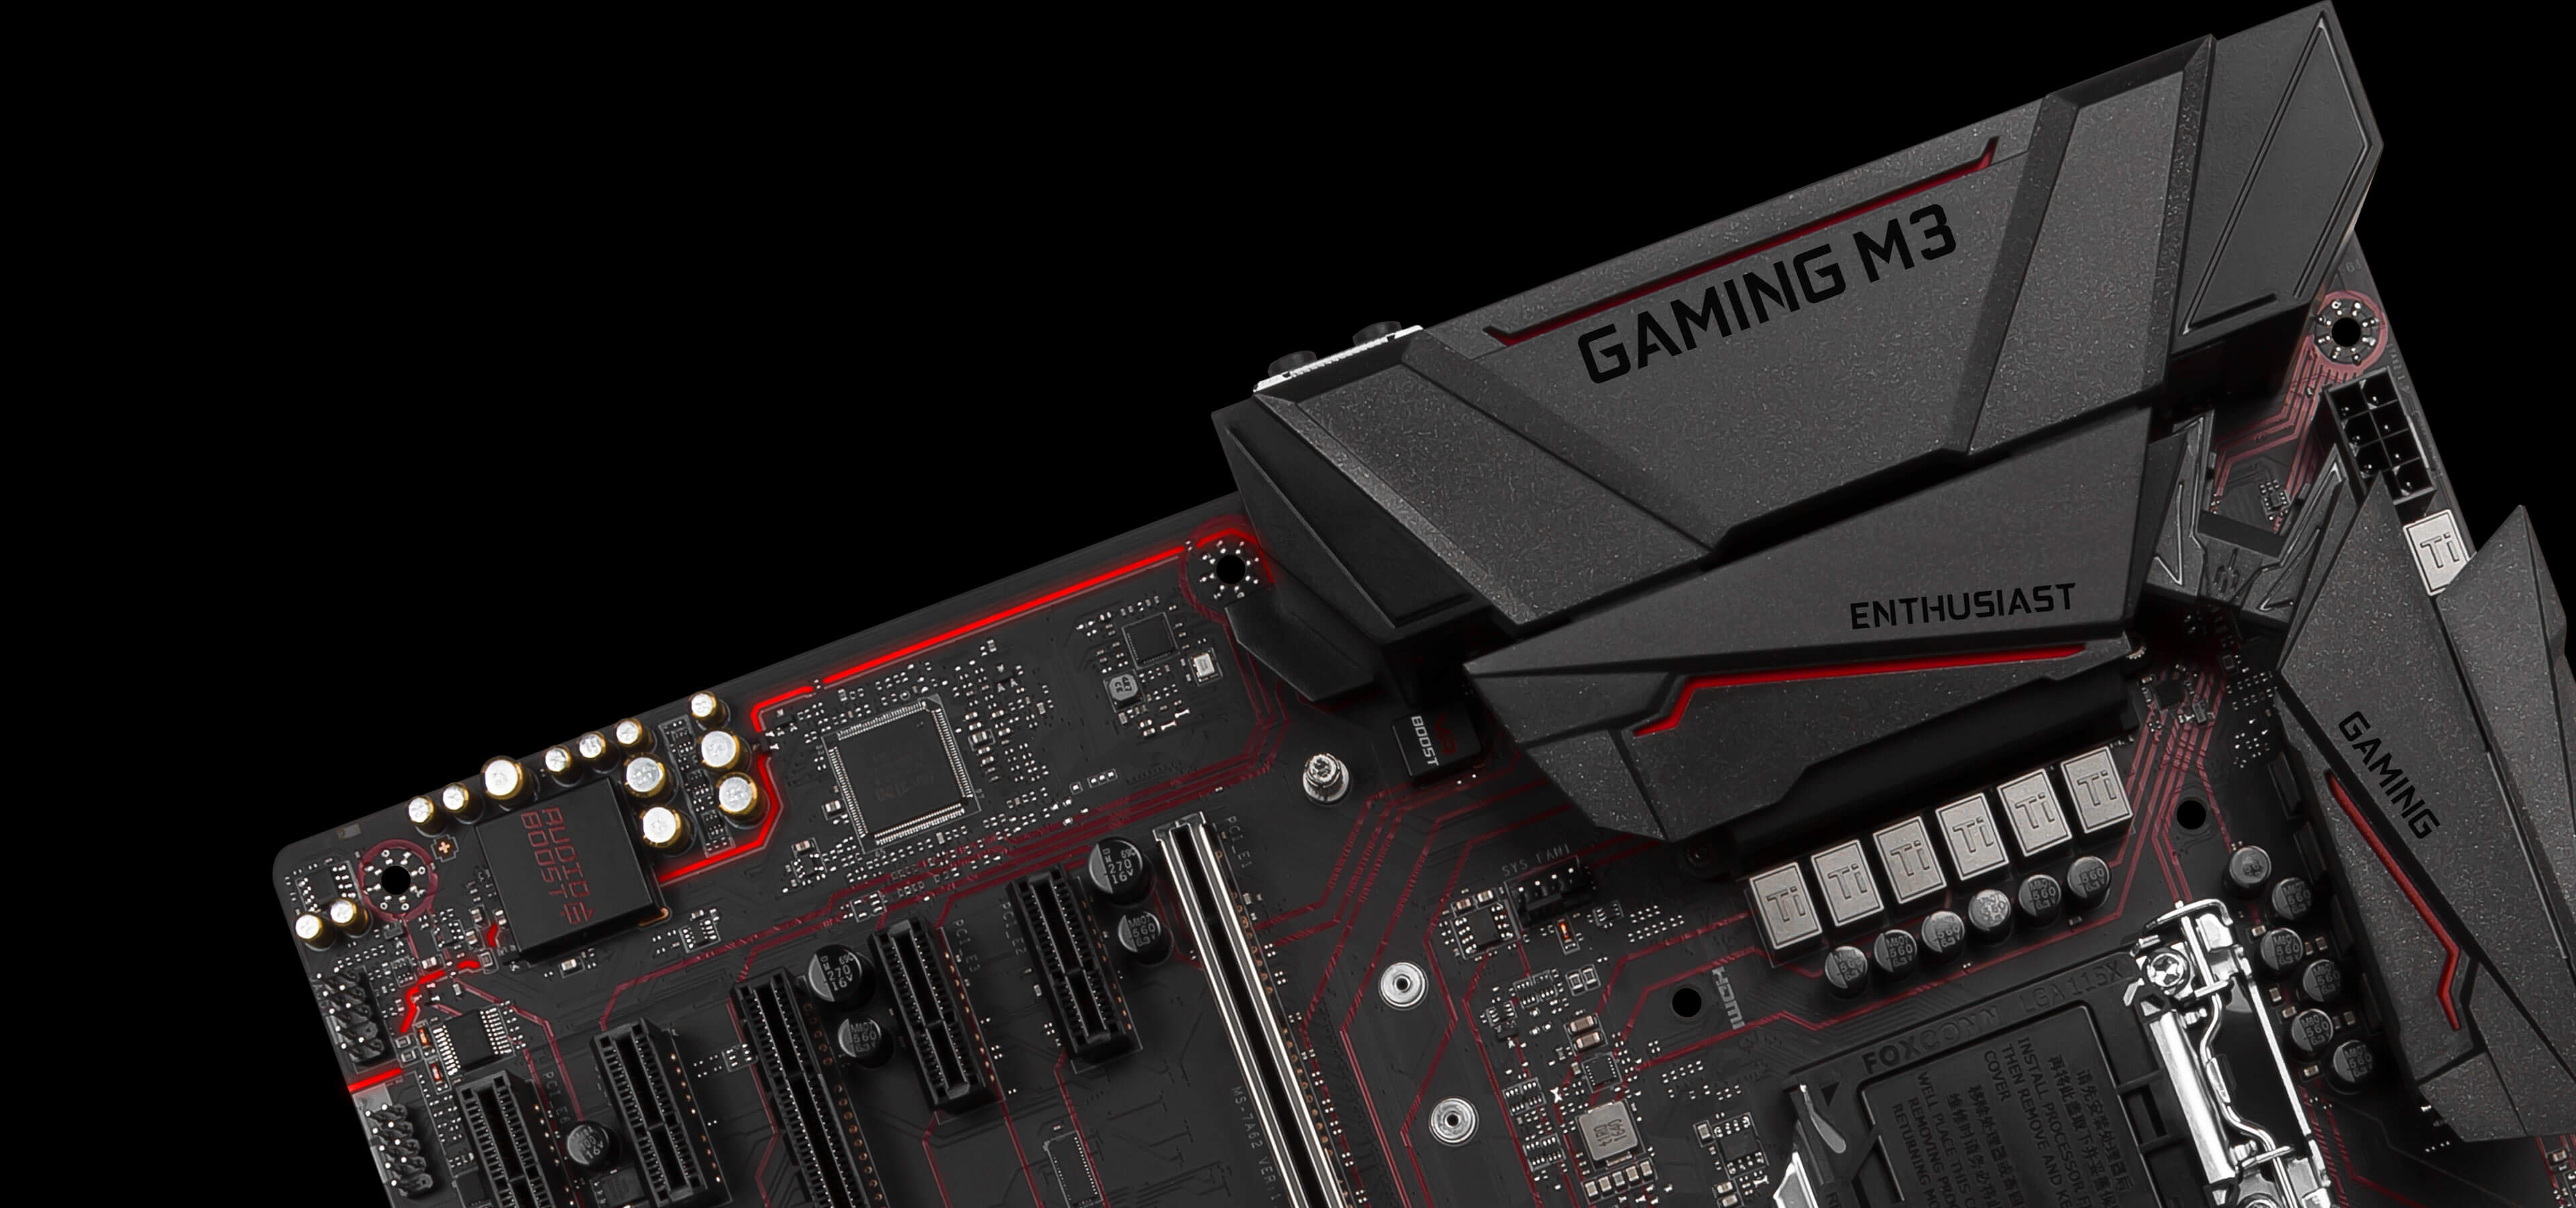 MSI Z270 Gaming M3 LGA1151 ATX Motherboard